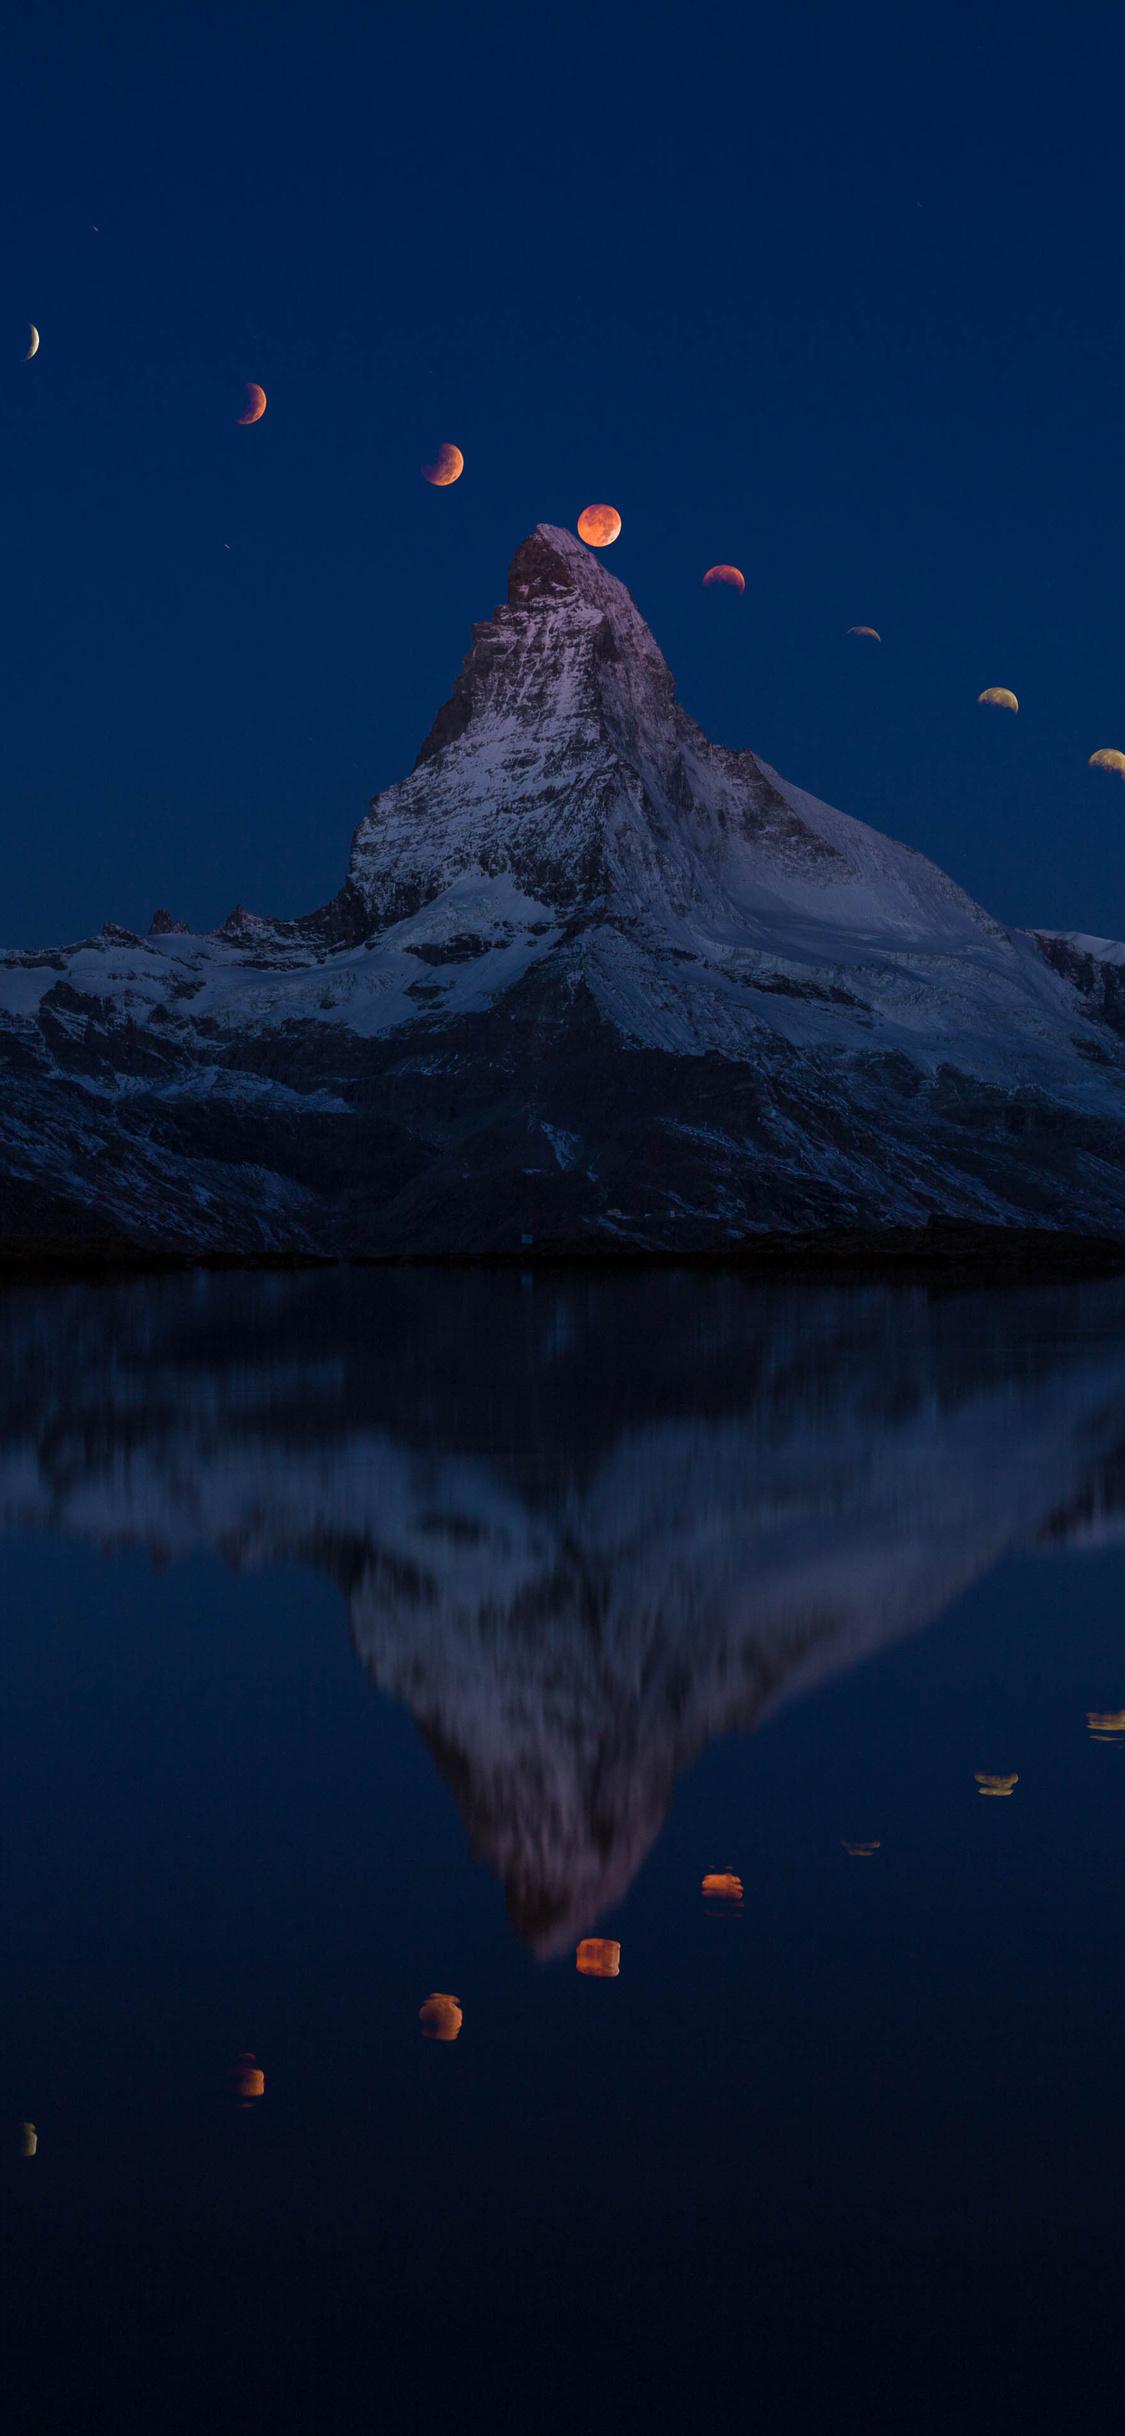 Matterhorn 4k Wallpapers Top Free Matterhorn 4k Backgrounds Wallpaperaccess